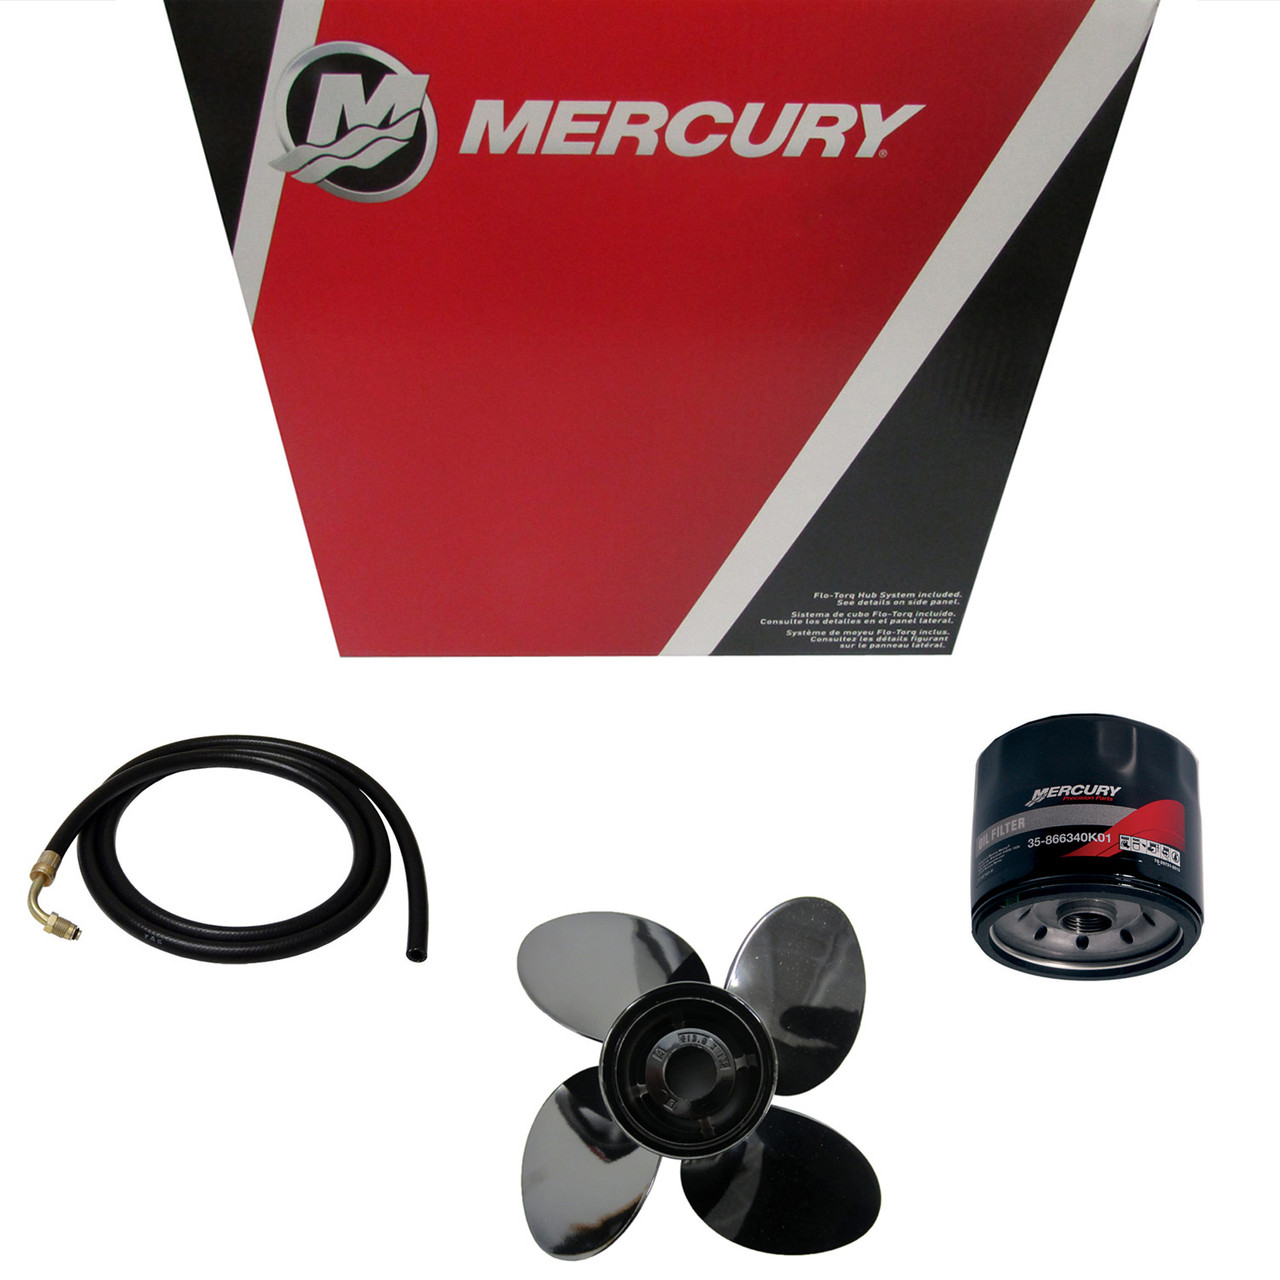 Mercury Marine / Mercruiser New OEM Relay, 803632T